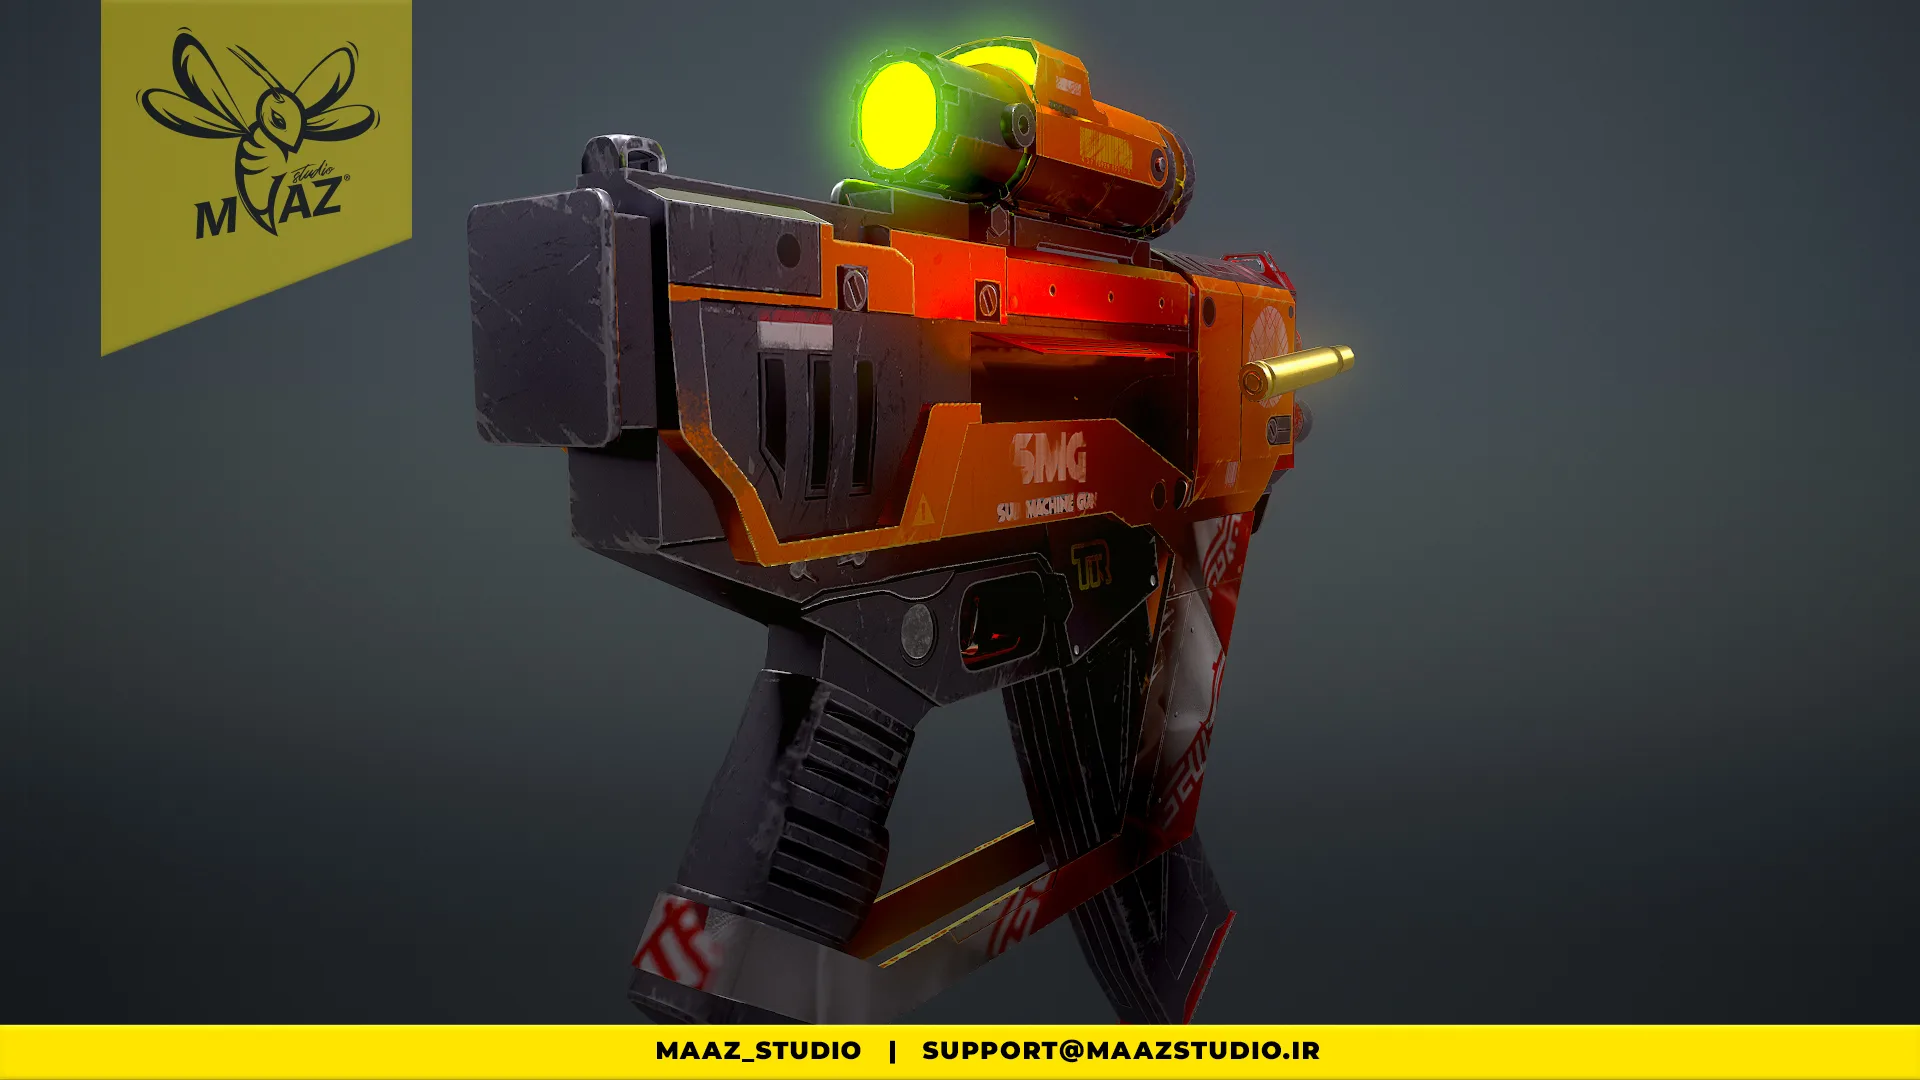 Game Ready Sci-Fi Sub-Machine Gun